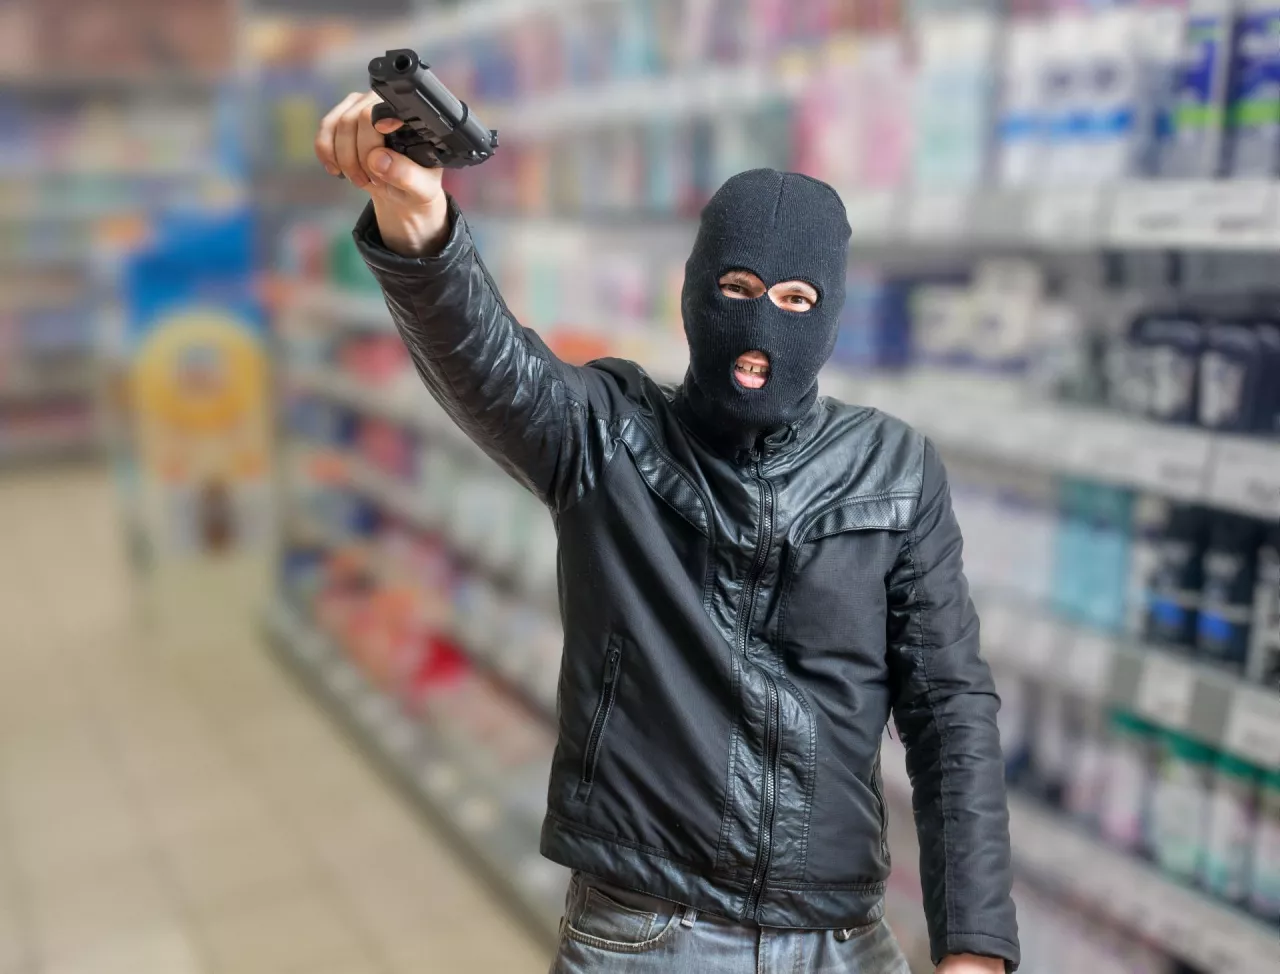 Napastnicy, którzy próbowali okraść kasę sklepu Żabka w Kobyłce byli wyposażeni w broń i metalową pałkę (fot. Shutterstock)